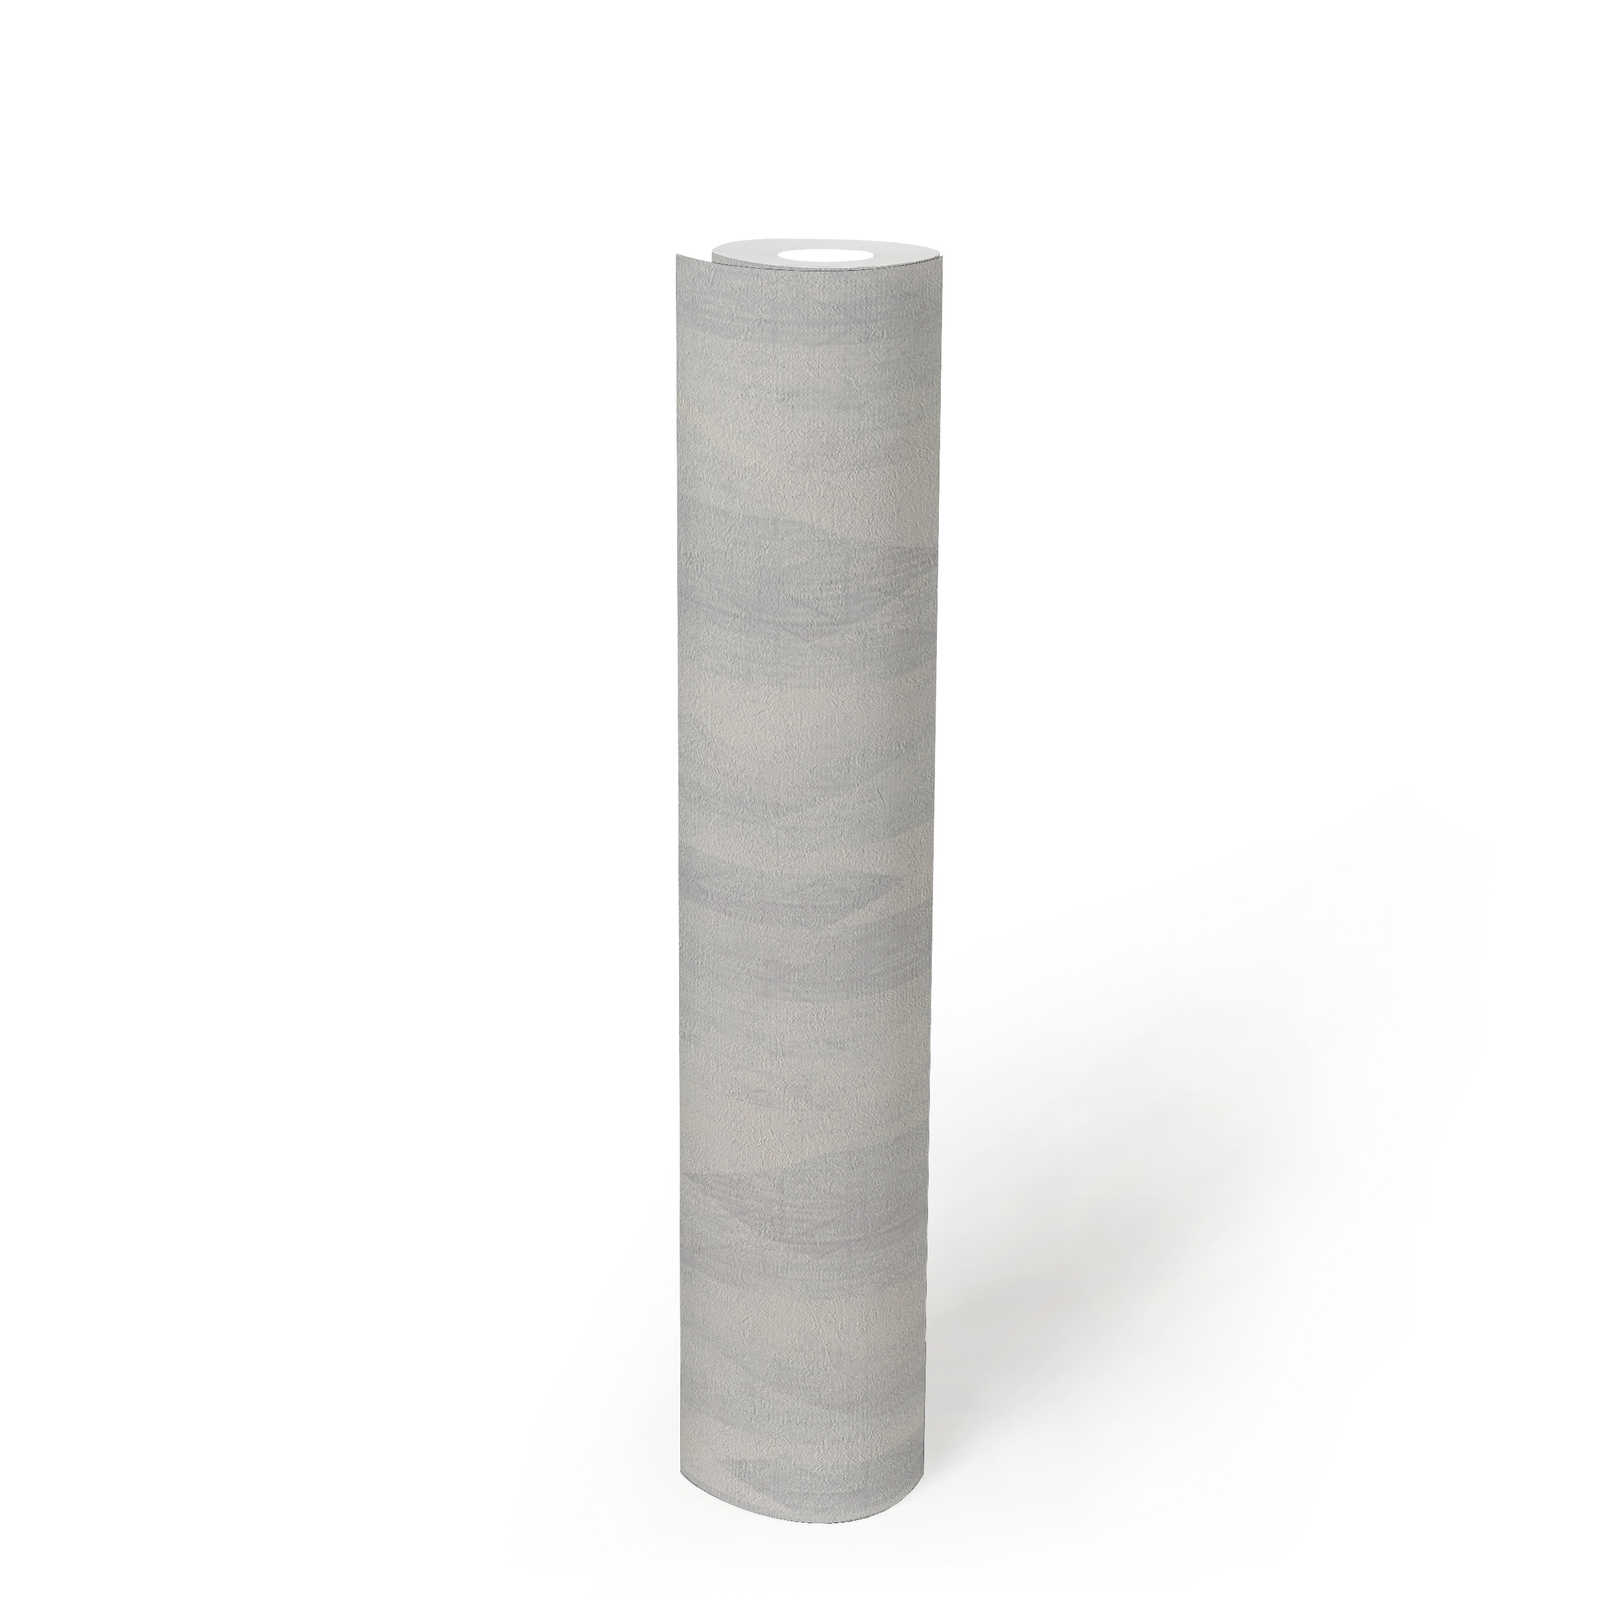             Grafisch vliesbehang met subtiel ruitpatroon - grijs, wit
        